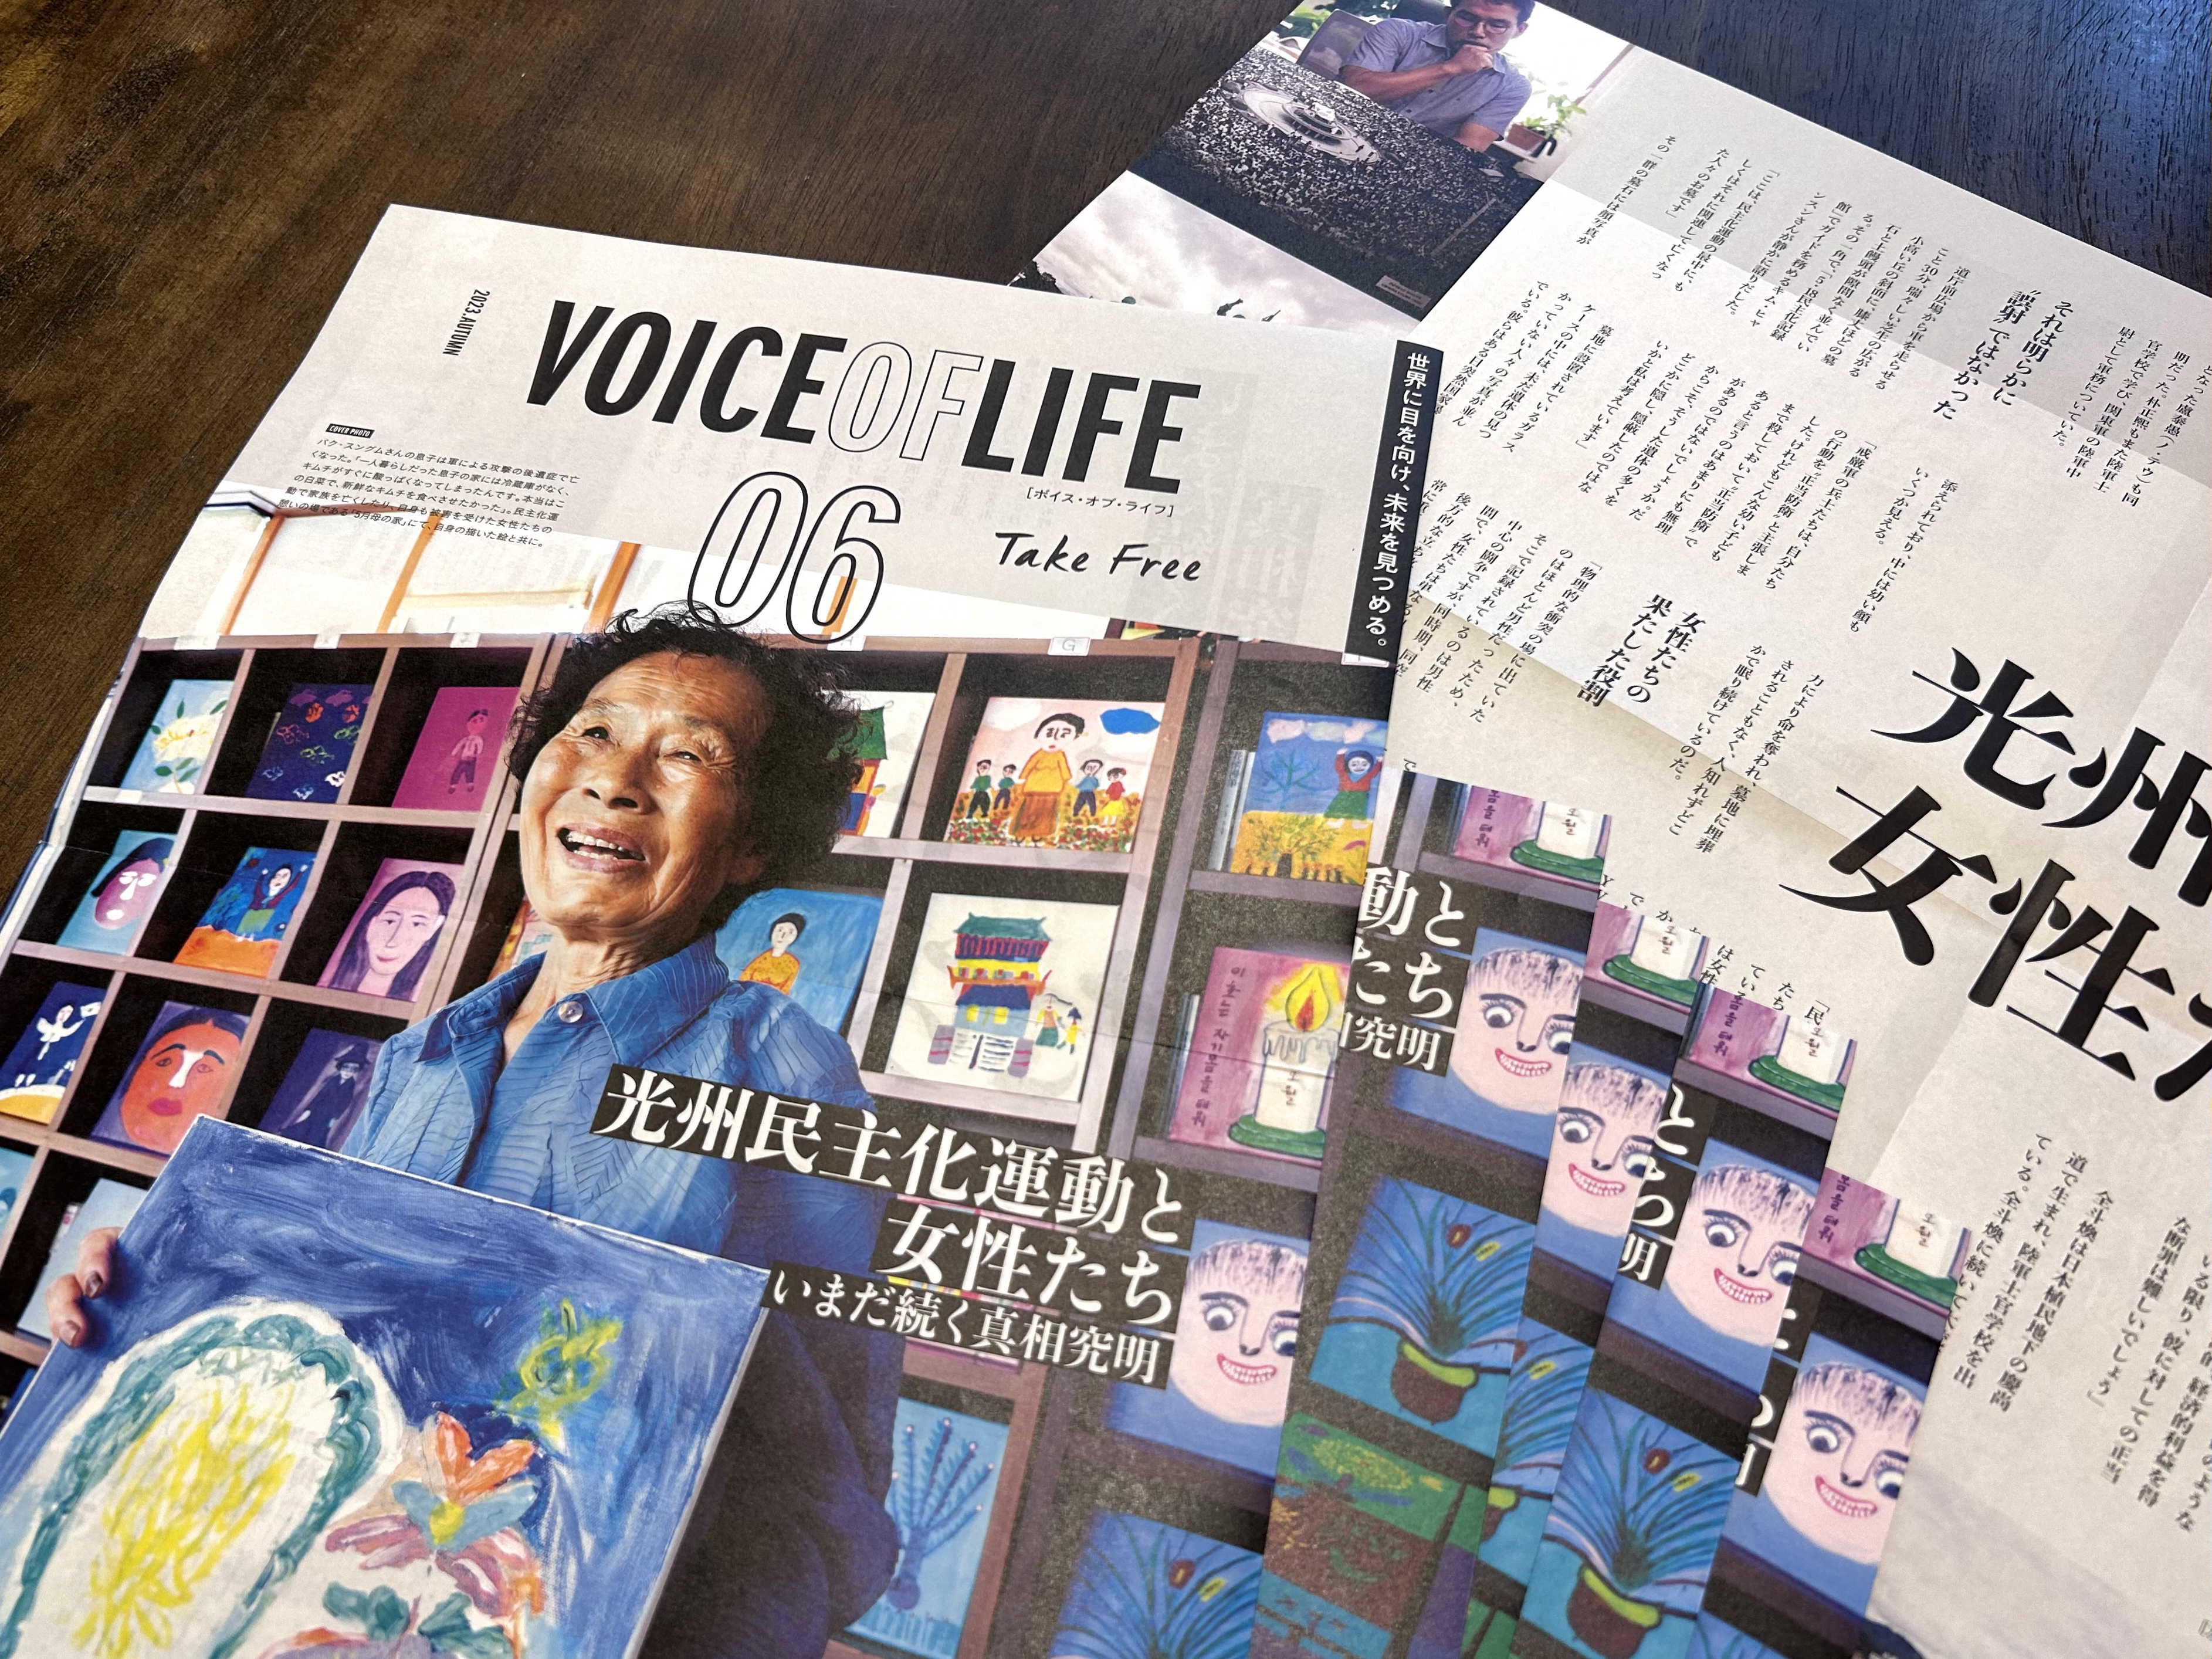 D４Pフリーマガジン「VOICE OF LIFE」（ボイス・オブ・ライフ）第６号完成・配布開始のお知らせ | D4Pブログ | Dialogue  for People（ダイアローグフォーピープル／D4P）